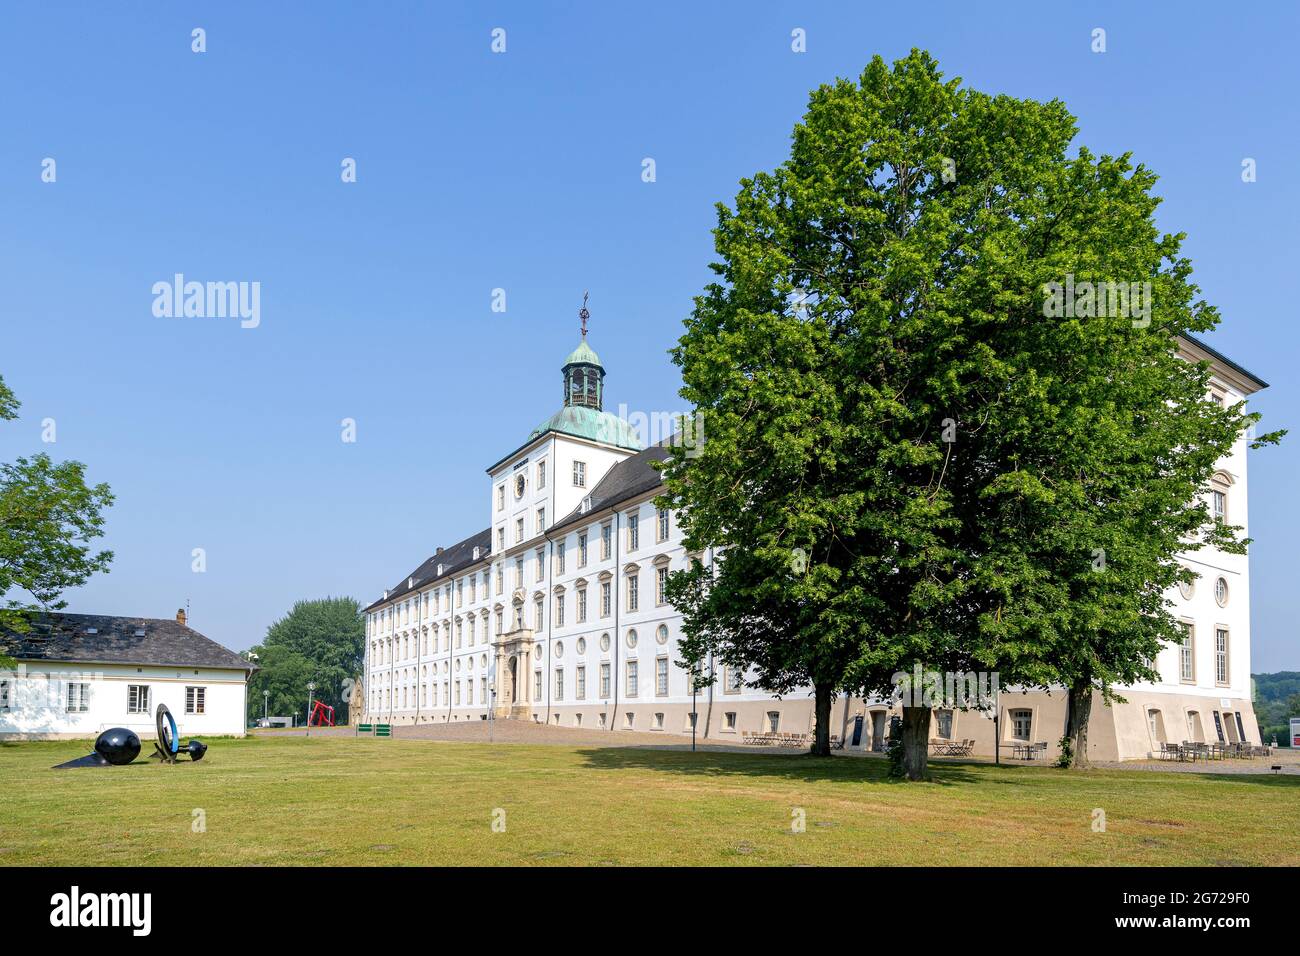 Castillo de Gottorf en Schleswig, Alemania. Es uno de los edificios seculares más importantes de Schleswig-Holstein. Foto de stock